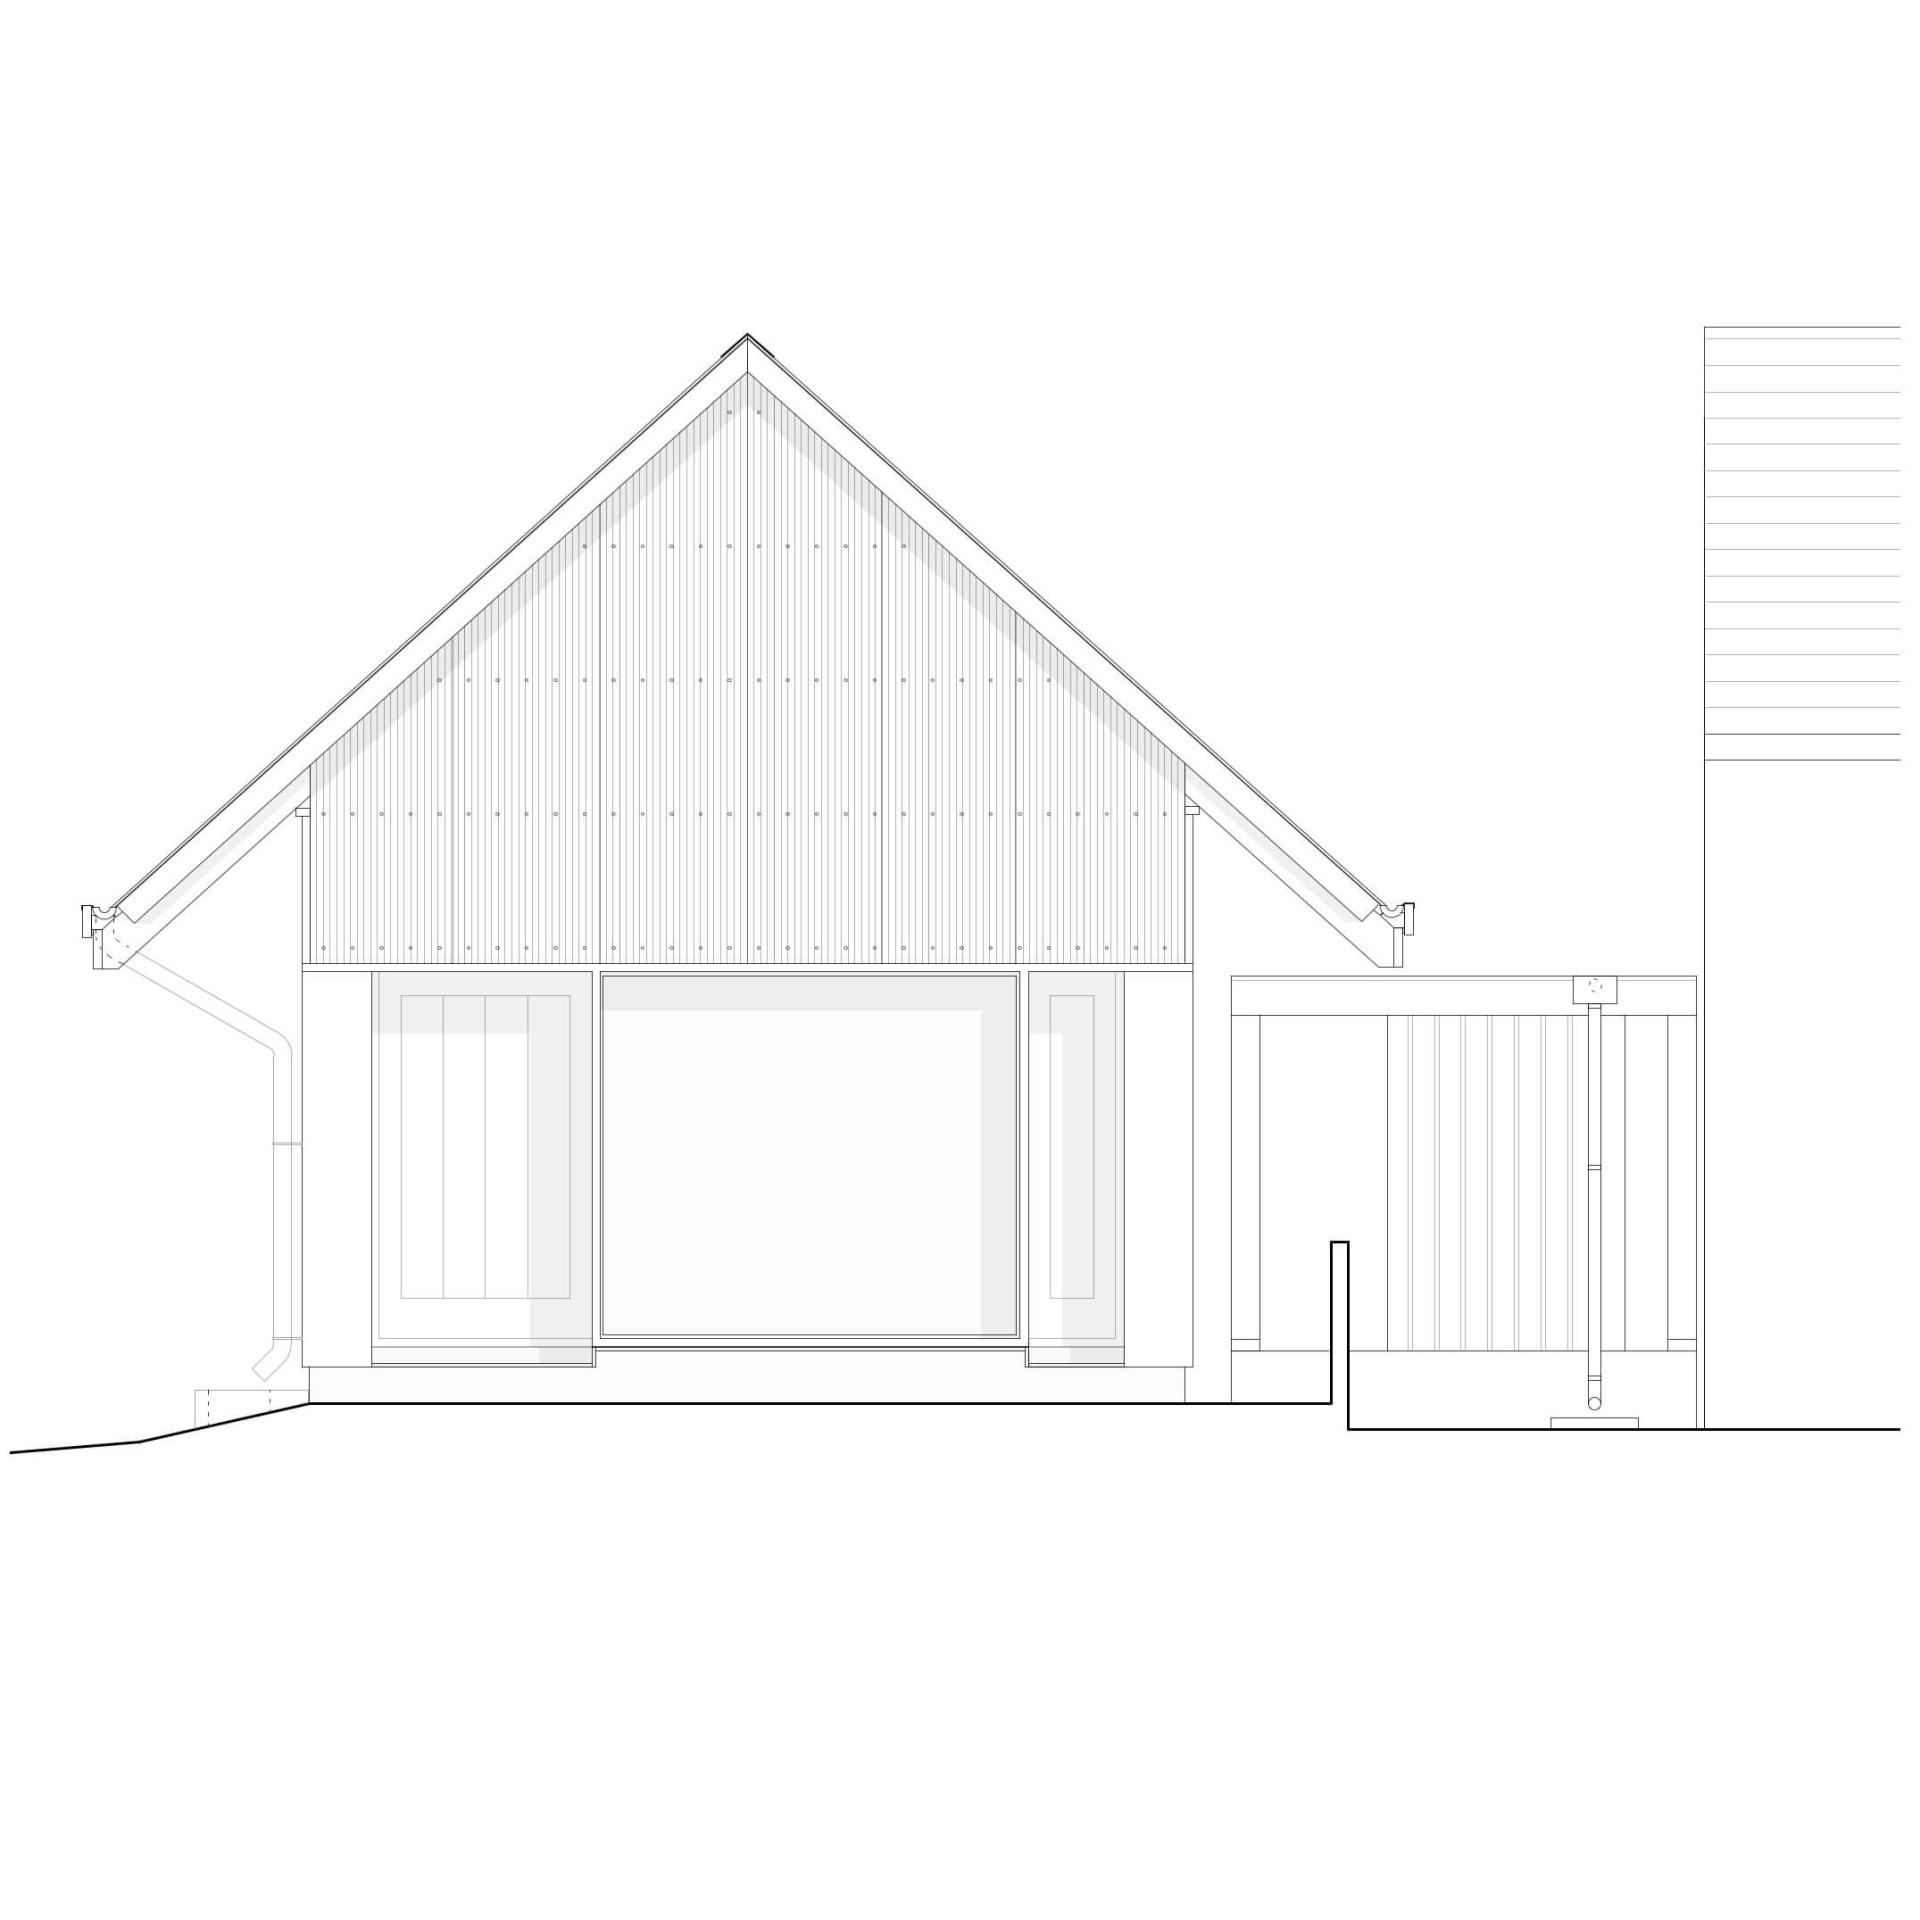 Steve Larkin Architects - Bolabeg-6.-Short-Elevation-Scale-160